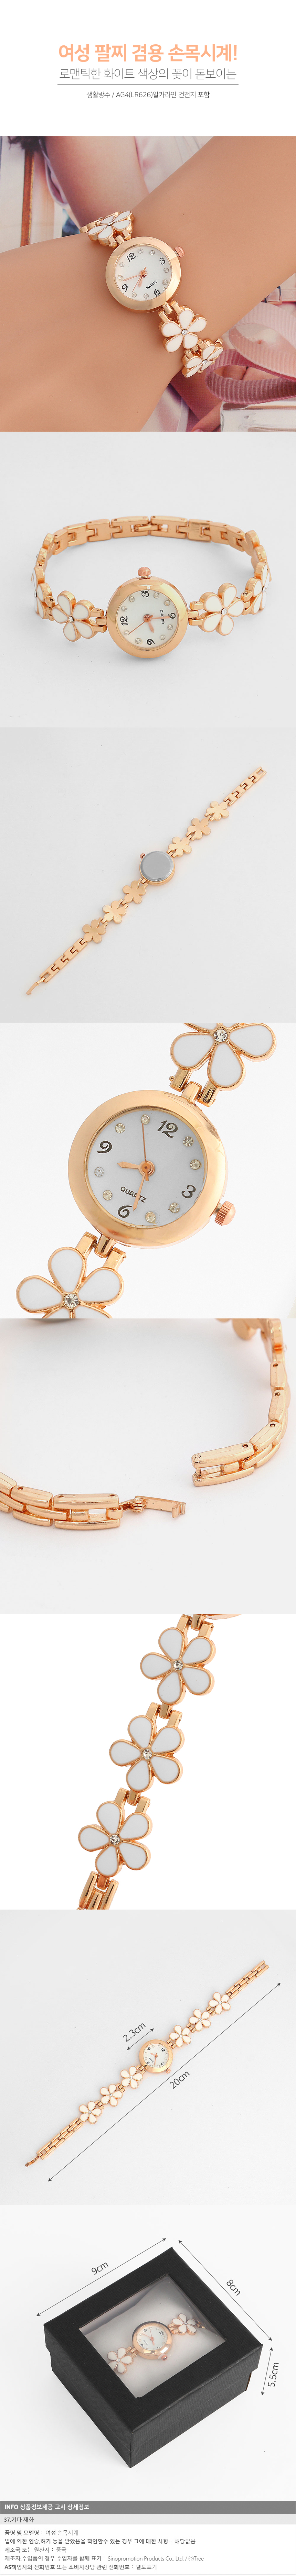 화이트 로맨틱 여성 팔찌시계/기념일 선물용 손목시계